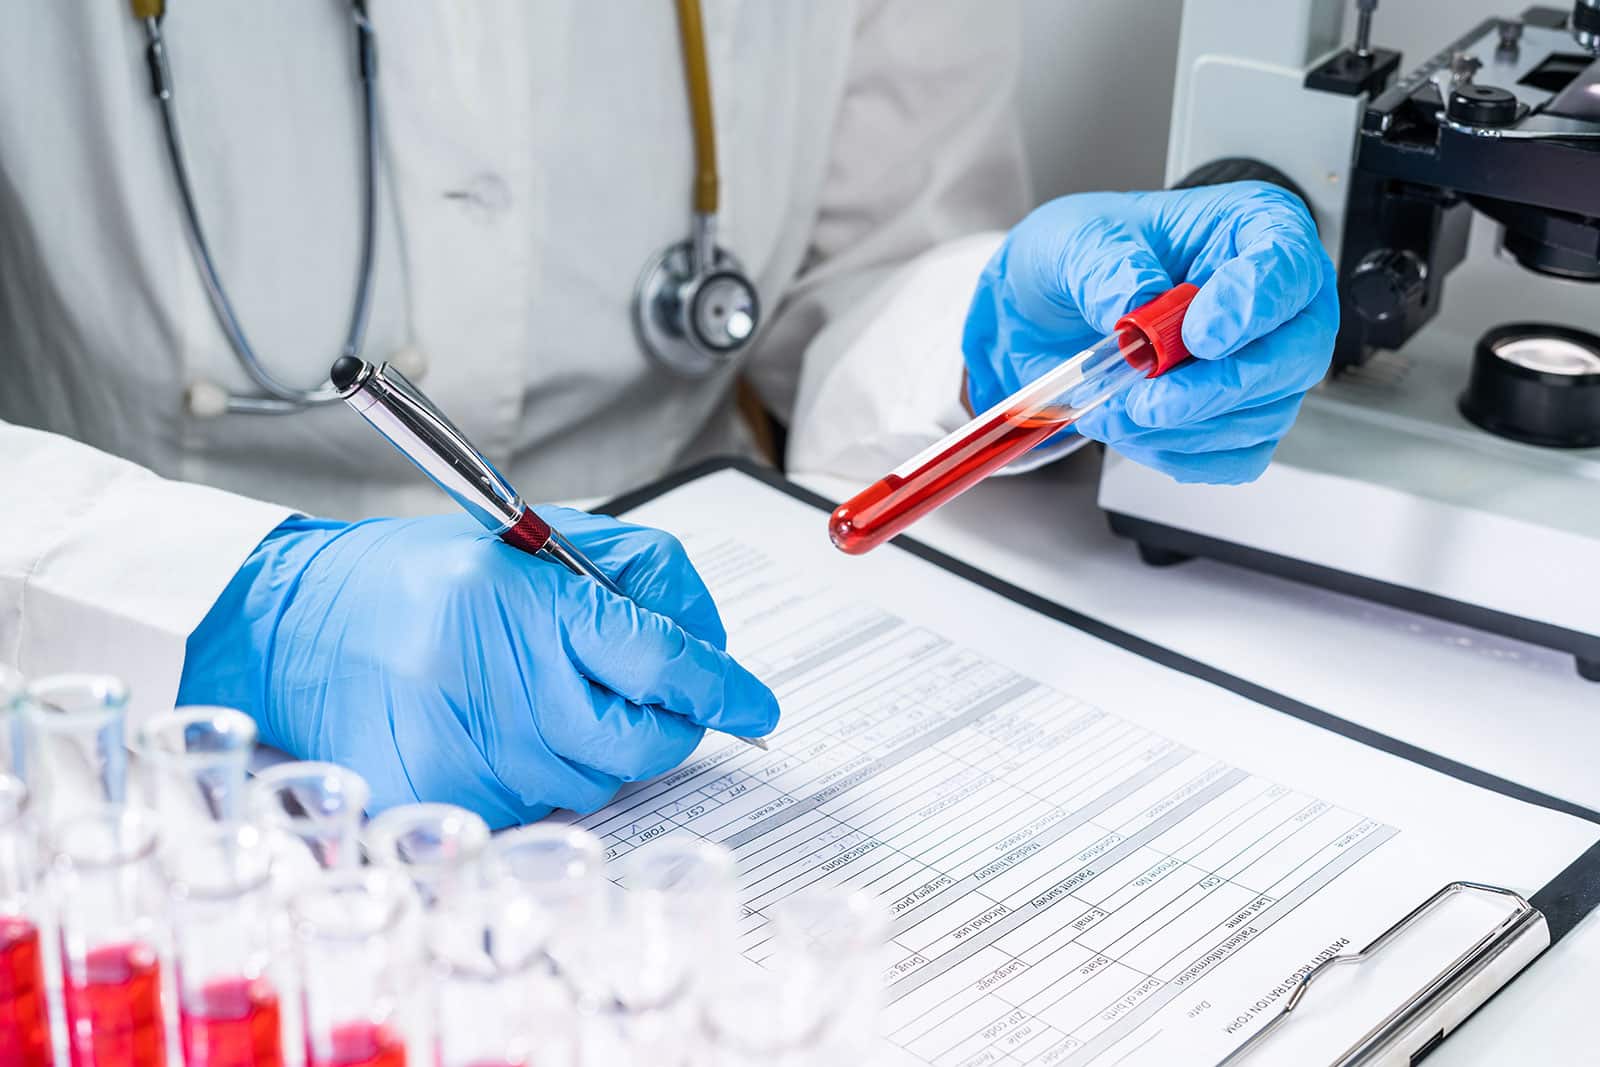 Do regular blood tests show drugs?